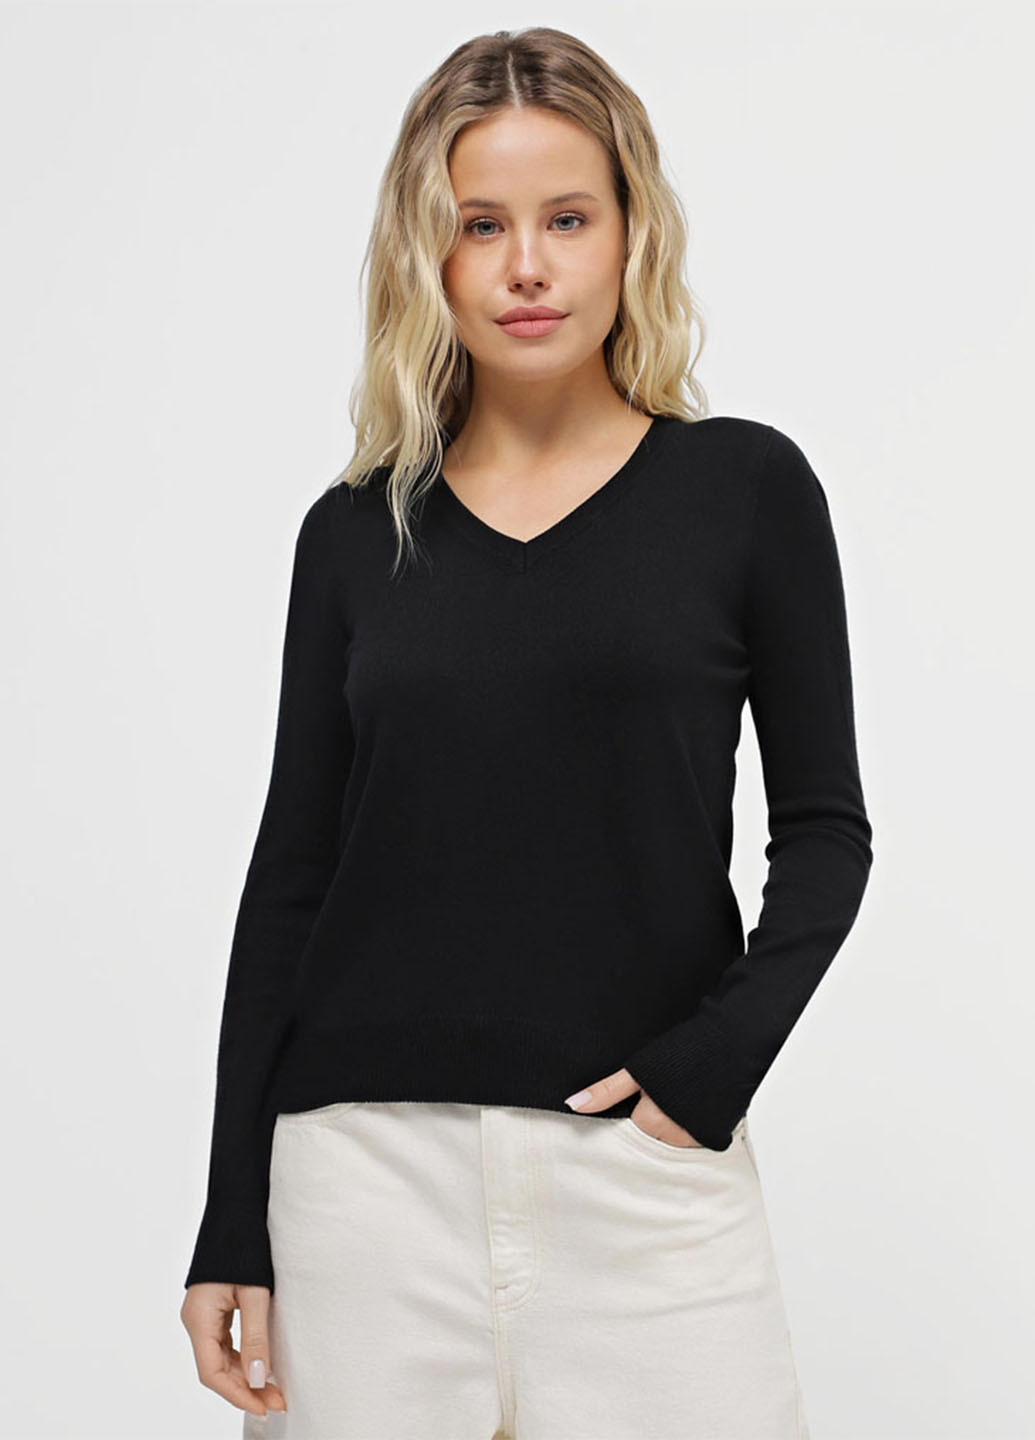 Черный демисезонный пуловер пуловер Promin